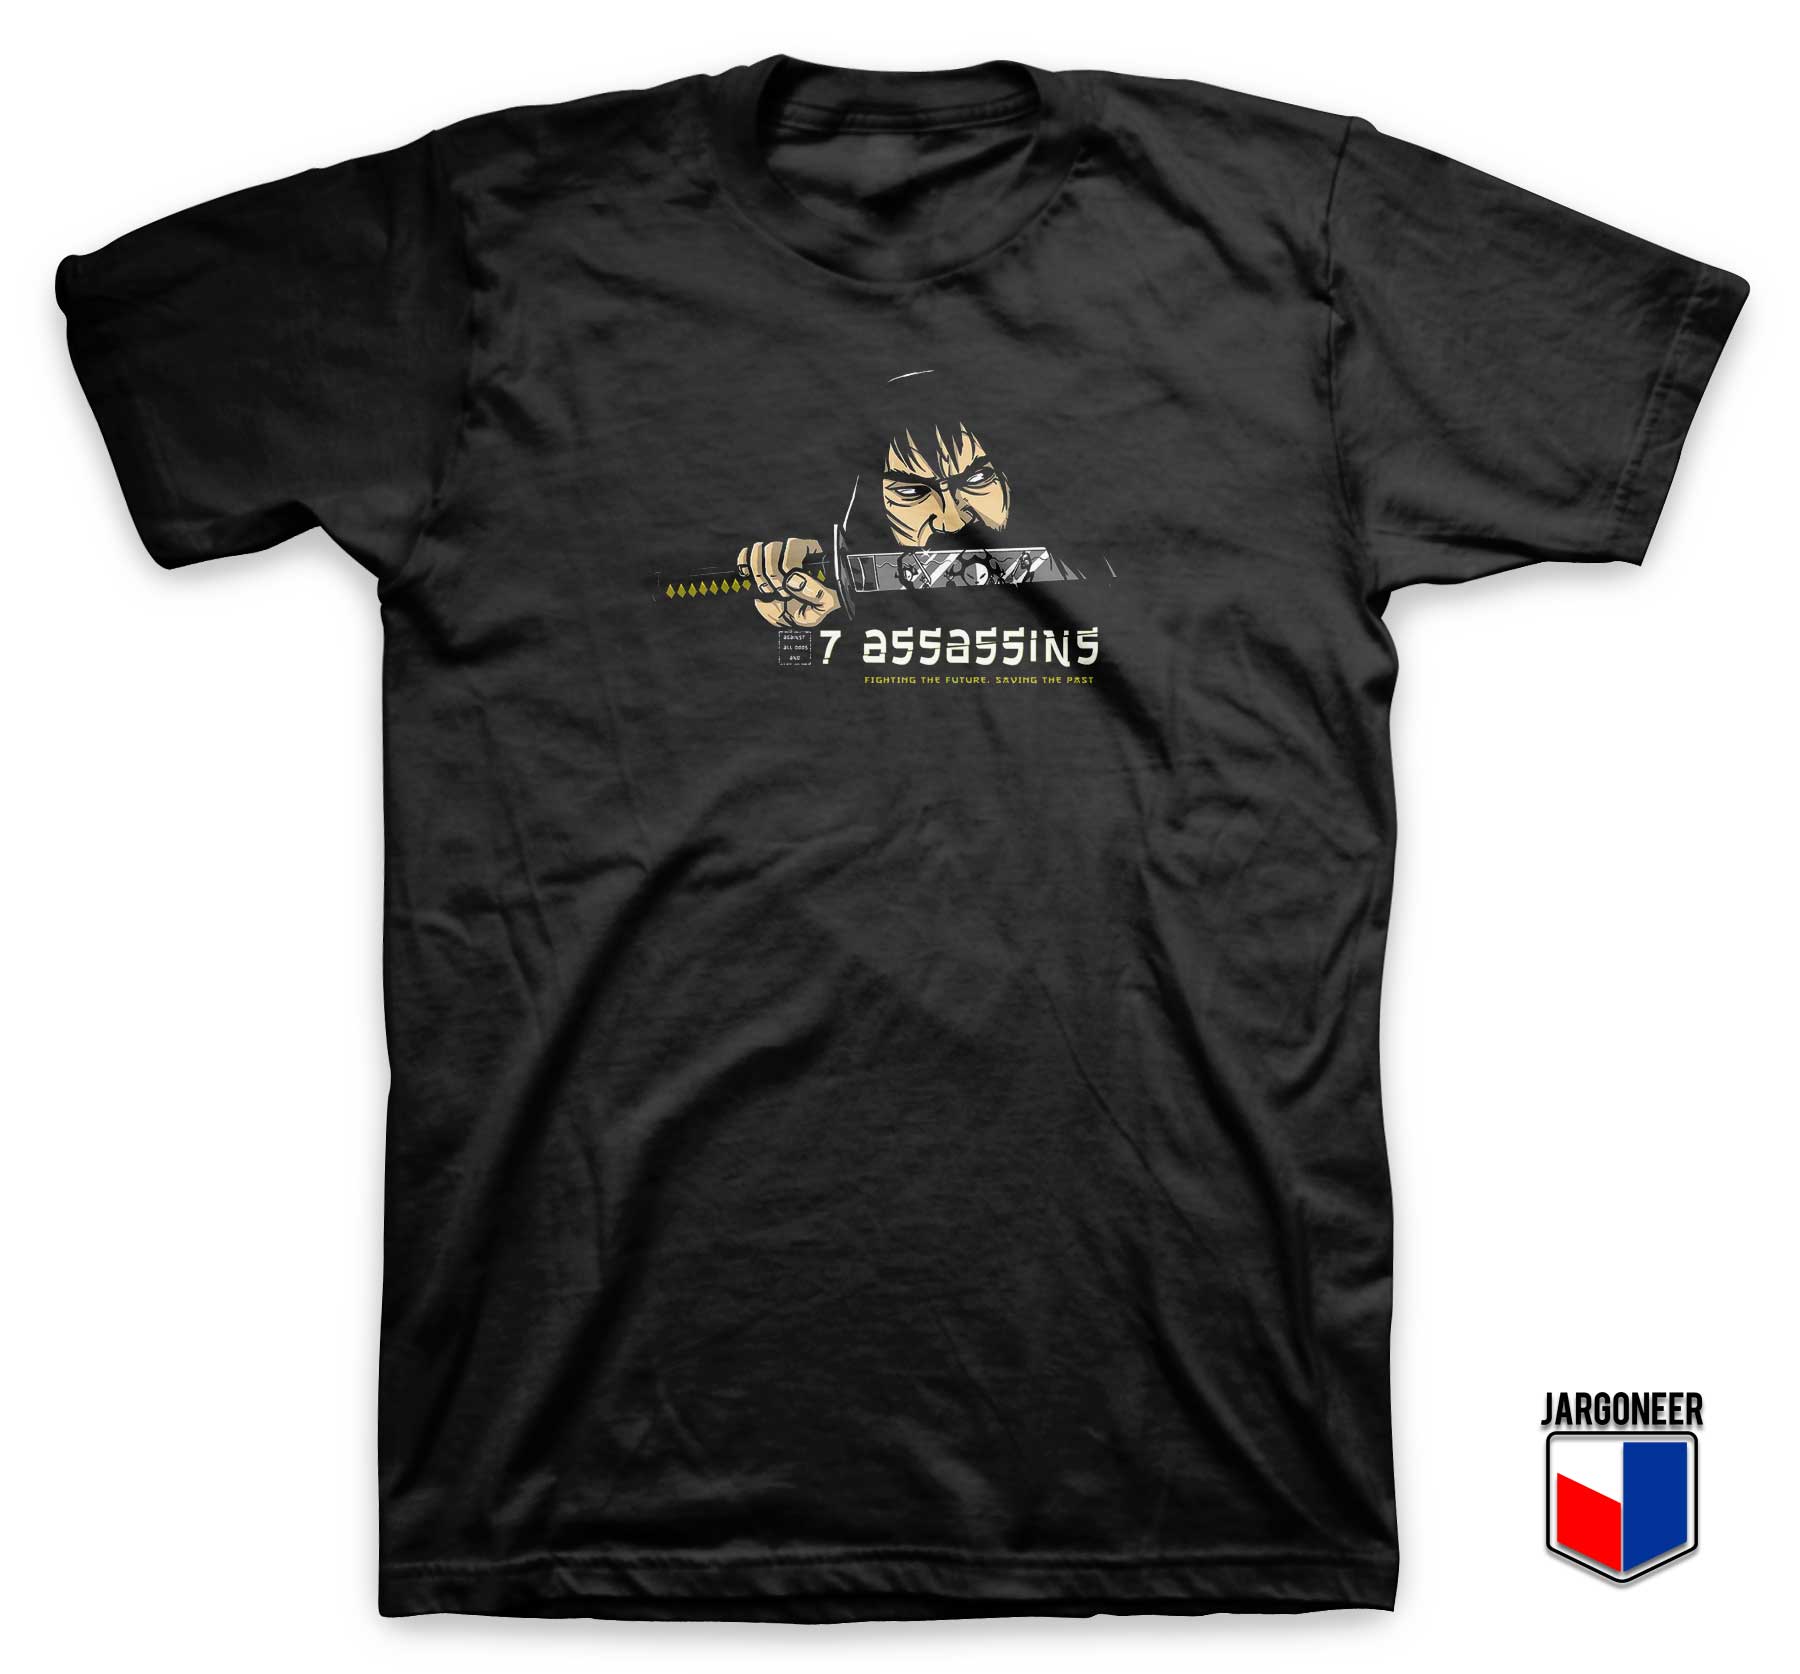 7 Assassins Samurai T Shirt - Shop Unique Graphic Cool Shirt Designs